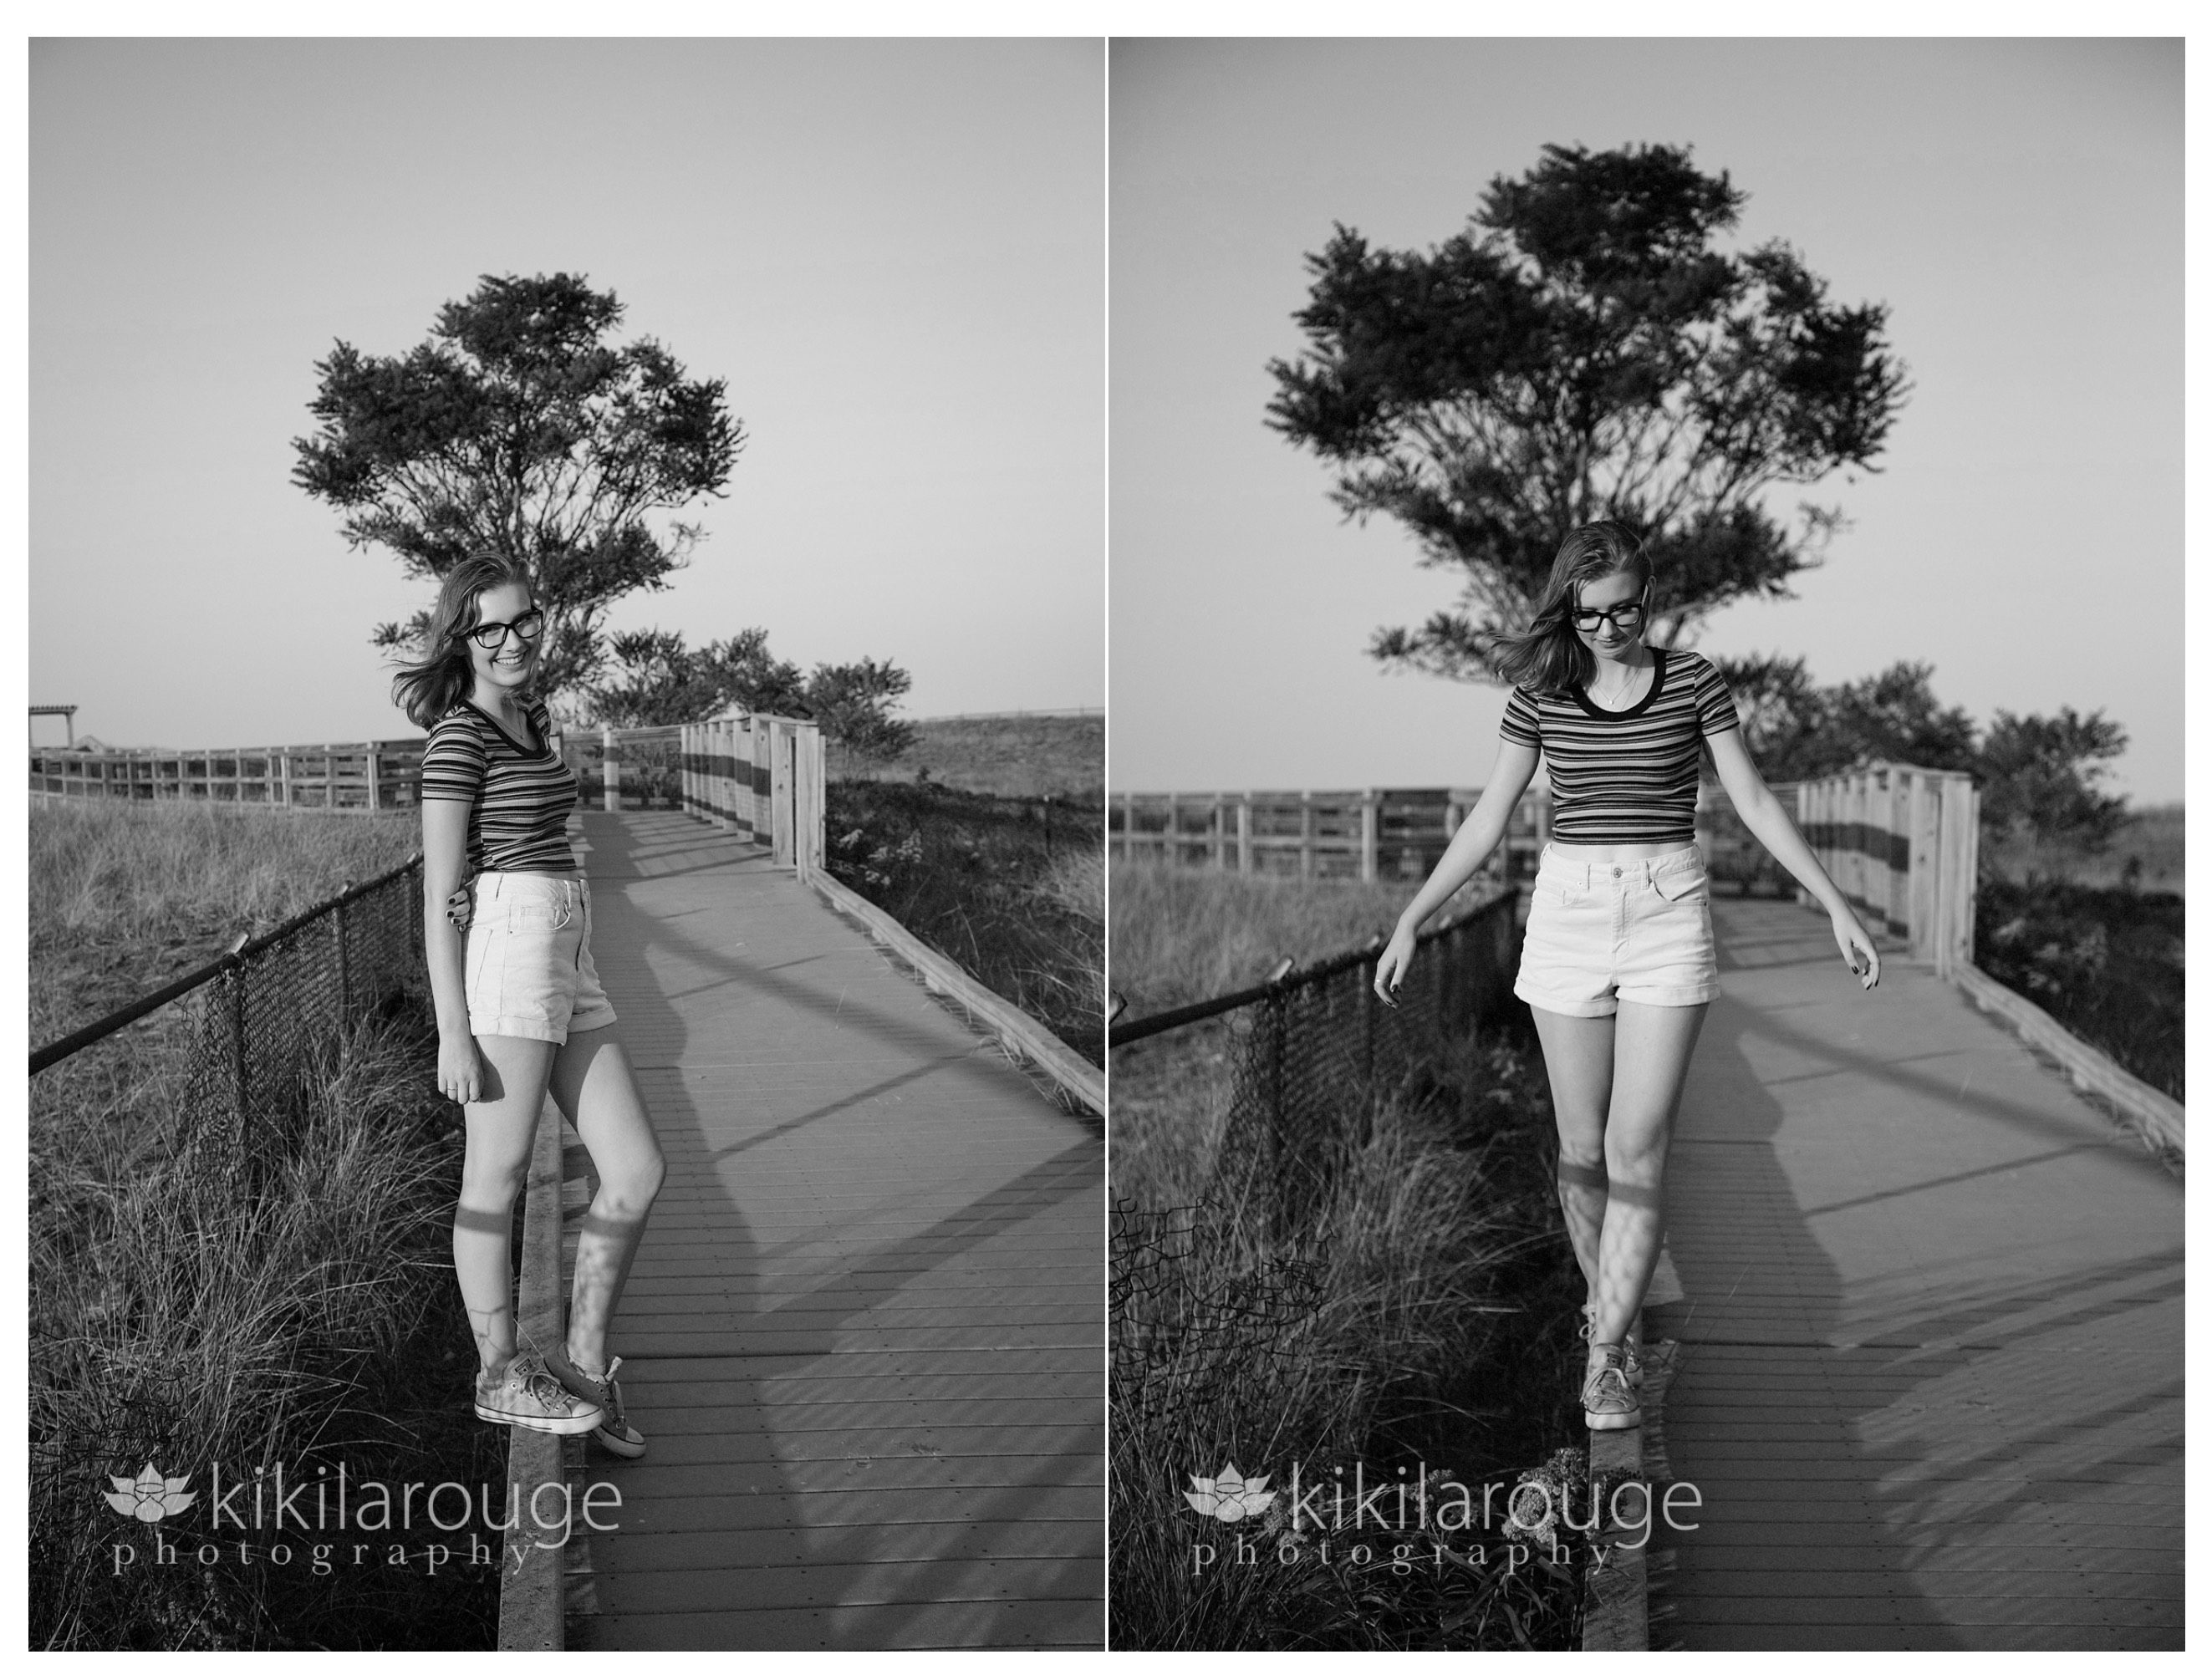 Girl balancing on beach dune walkway